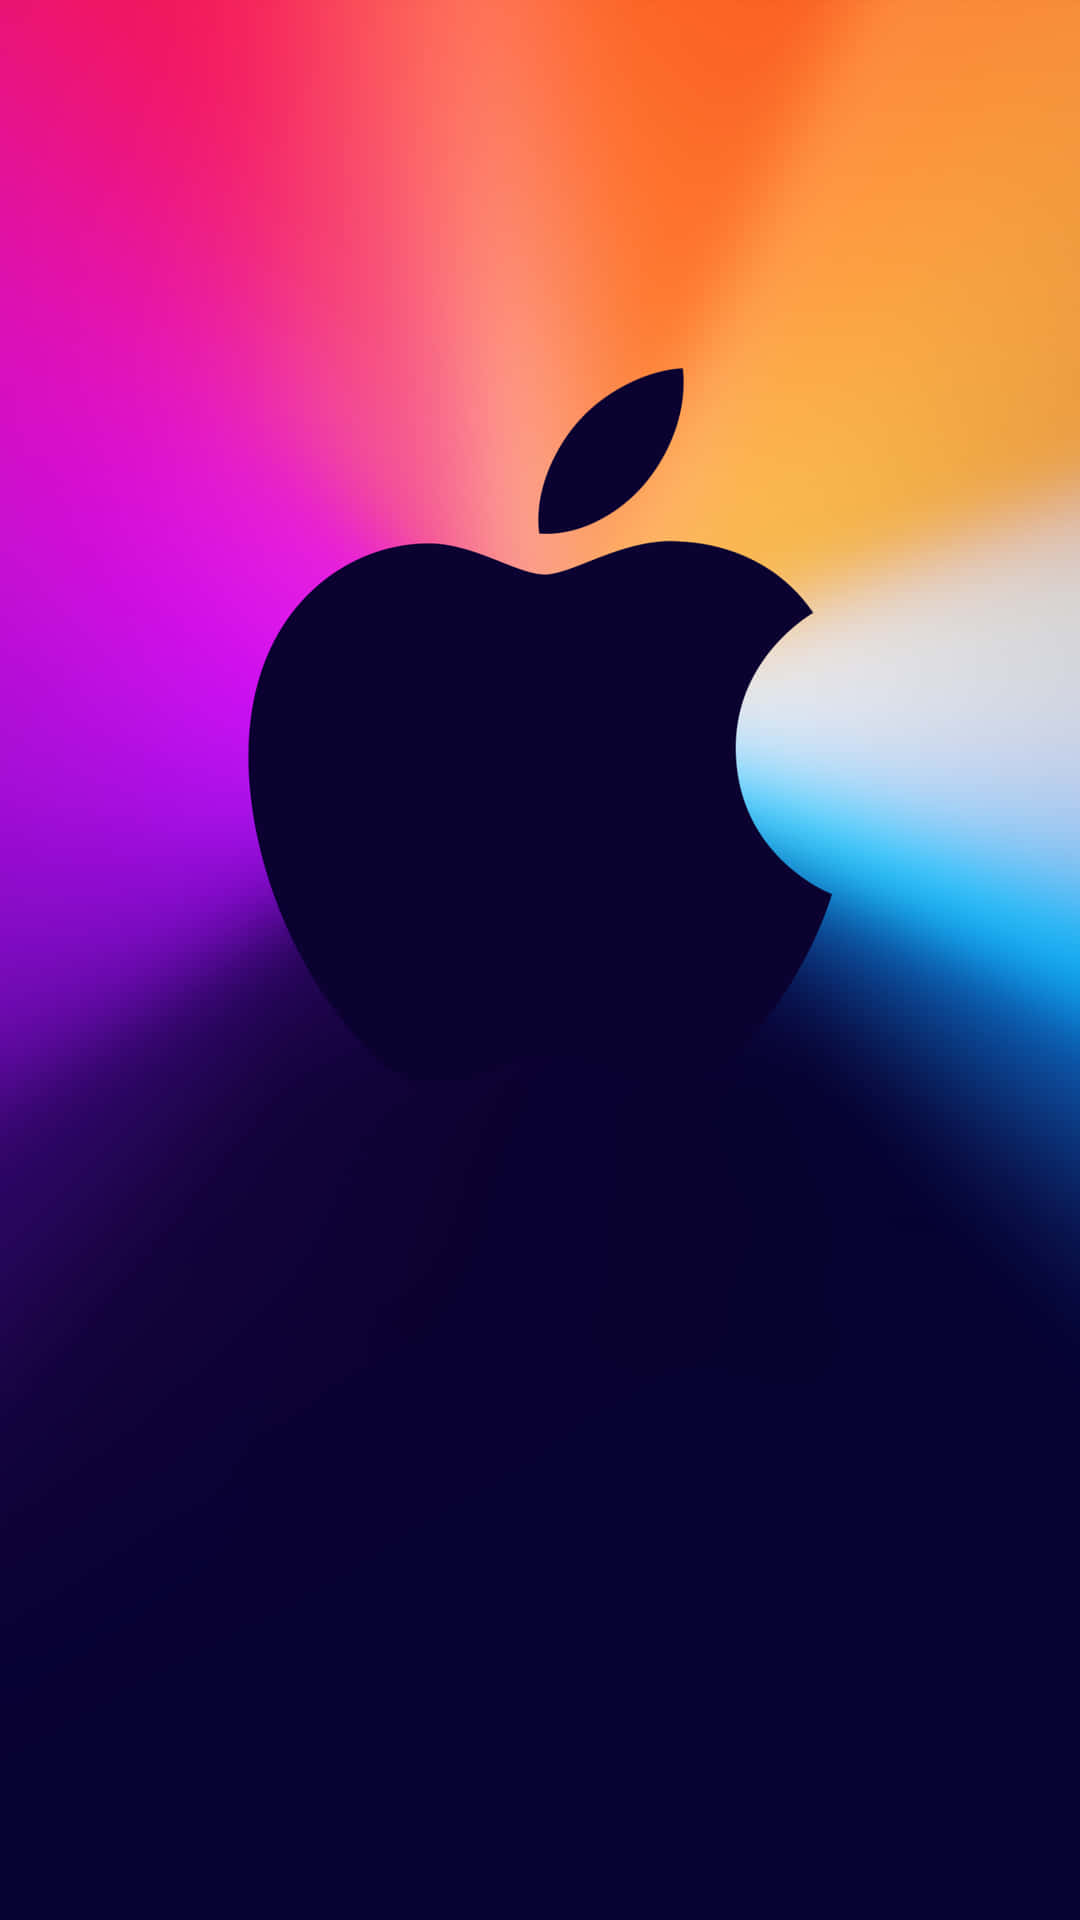 Unprimer Plano De La Parte Trasera Del Pixel 3 Con El Logotipo De Apple.